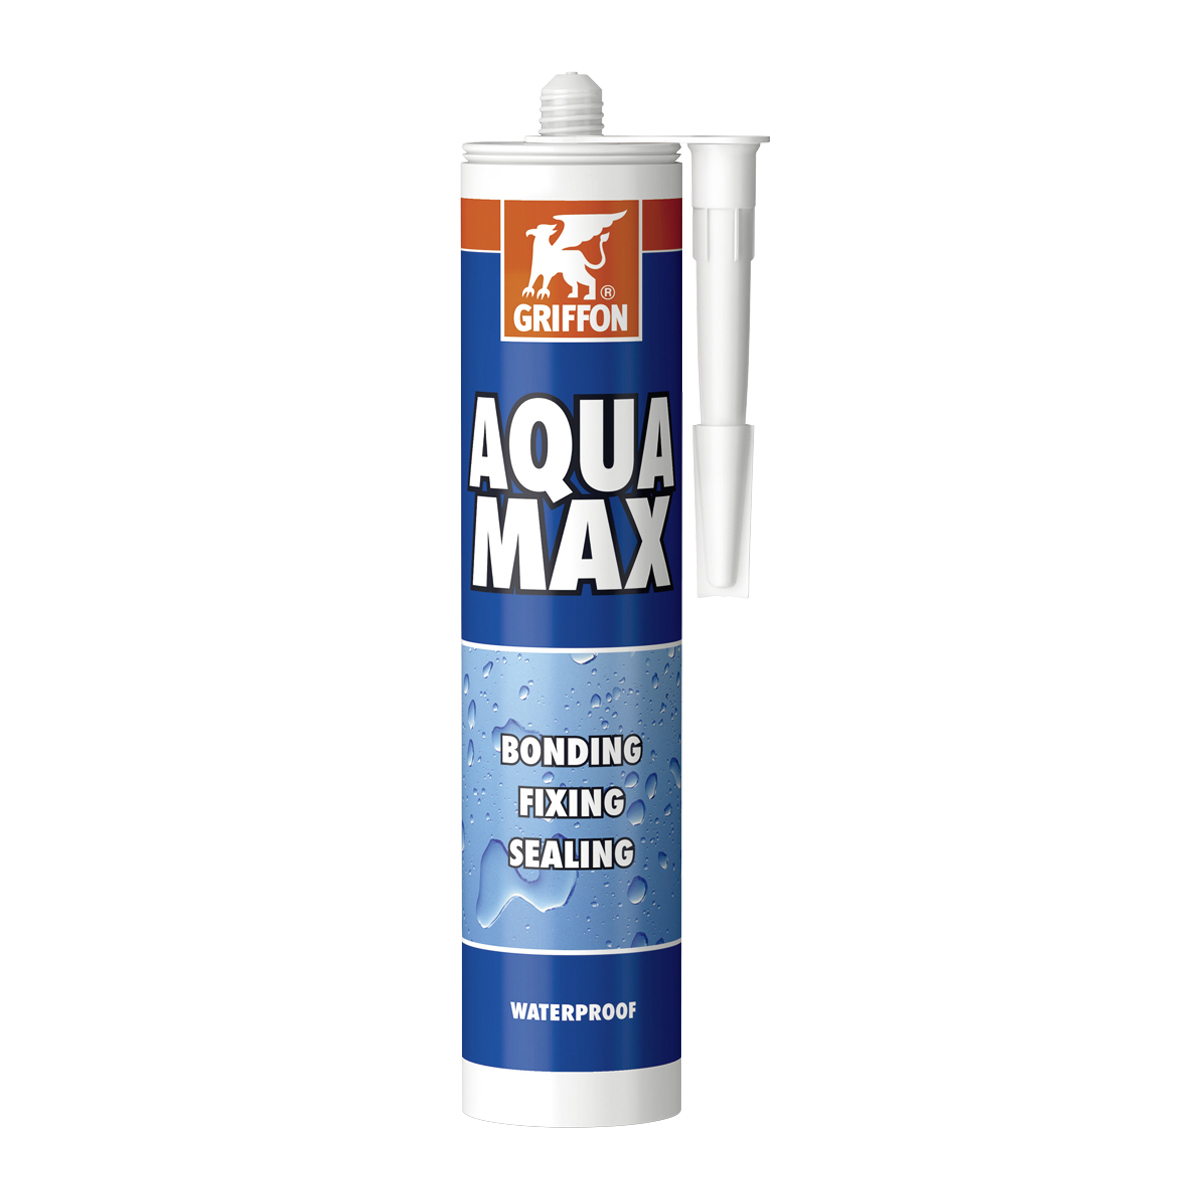 Aqua Max, wasserfester, lösungsmittelfreier Montageklebstoff und Dichtungskitt auf SMP-Polymer-Grundlage, 425 g, weiss Aqua Max, wasserfester, lösungsmittelfreier Montageklebstoff und Dichtungskitt auf SMP-Polymer-Grundlage, 425 g, weiss